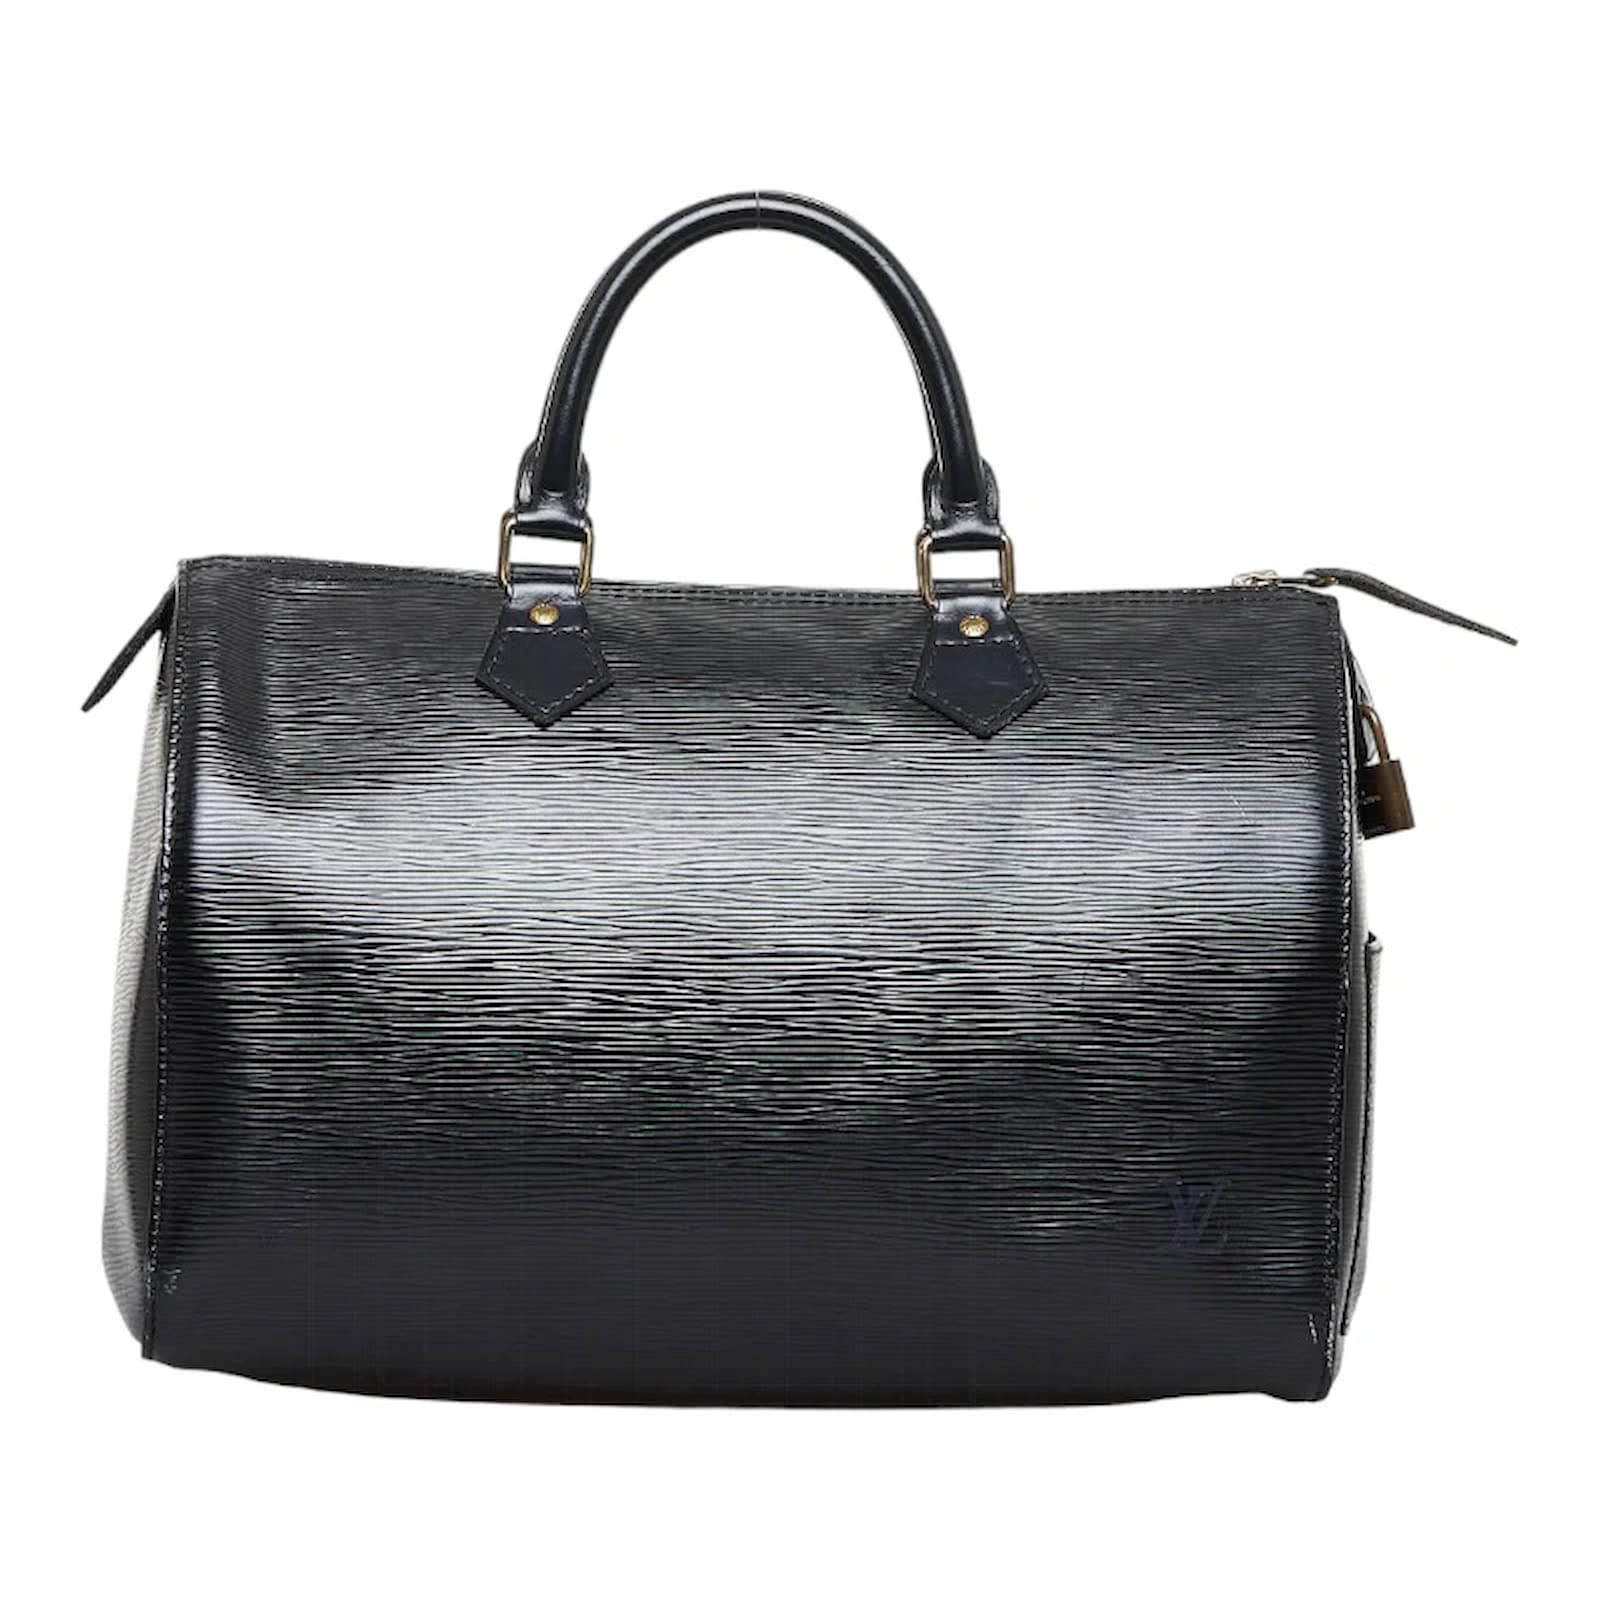 Louis Vuitton Epi Speedy 30 M59022 Black Leather Pony-style